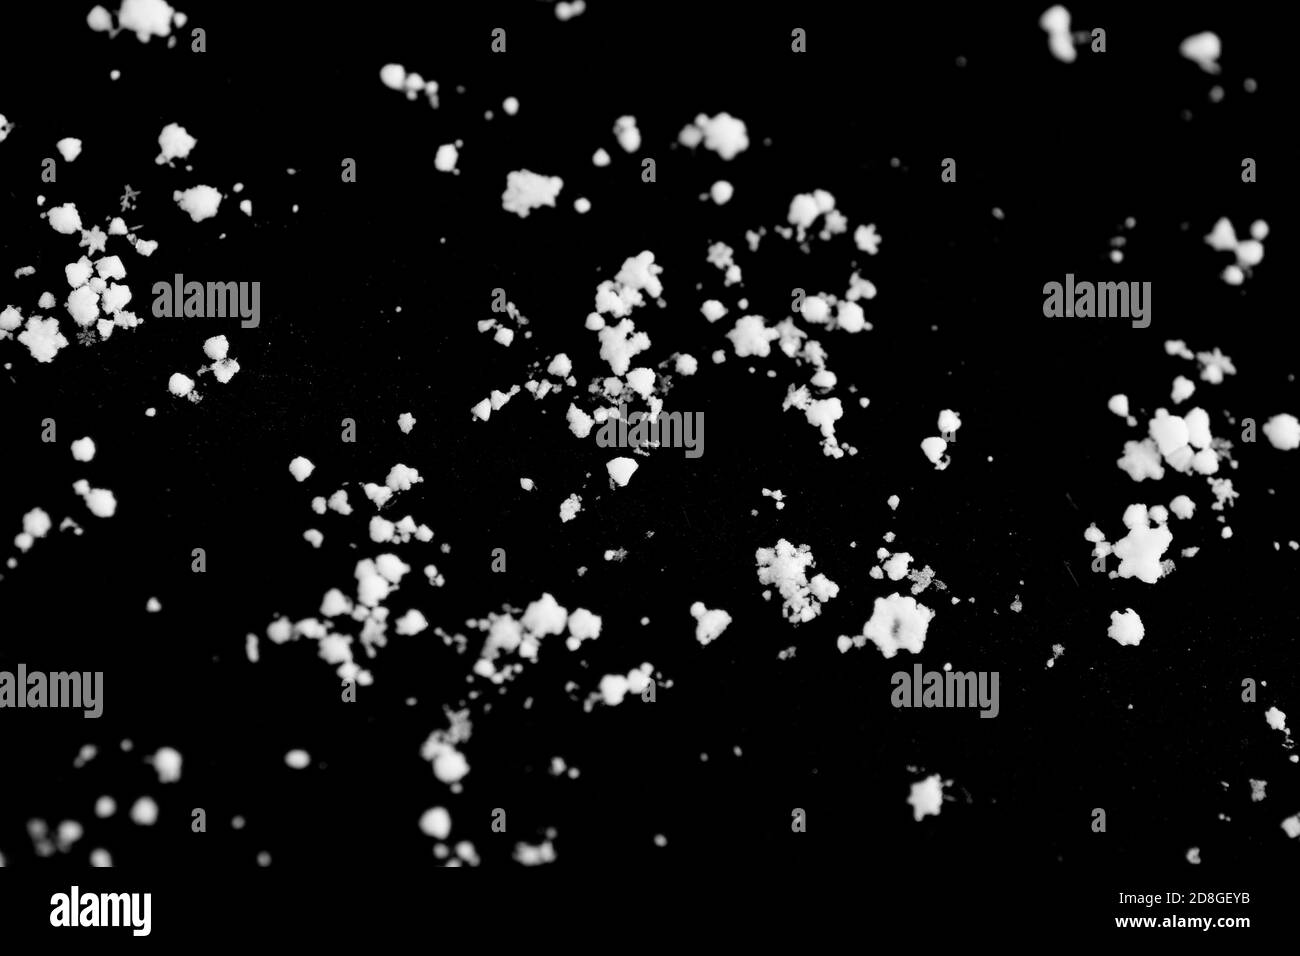 Molti fiocchi di neve su uno sfondo nero, l'immagine di sfondo assomiglia a un cielo stellato scuro Foto Stock